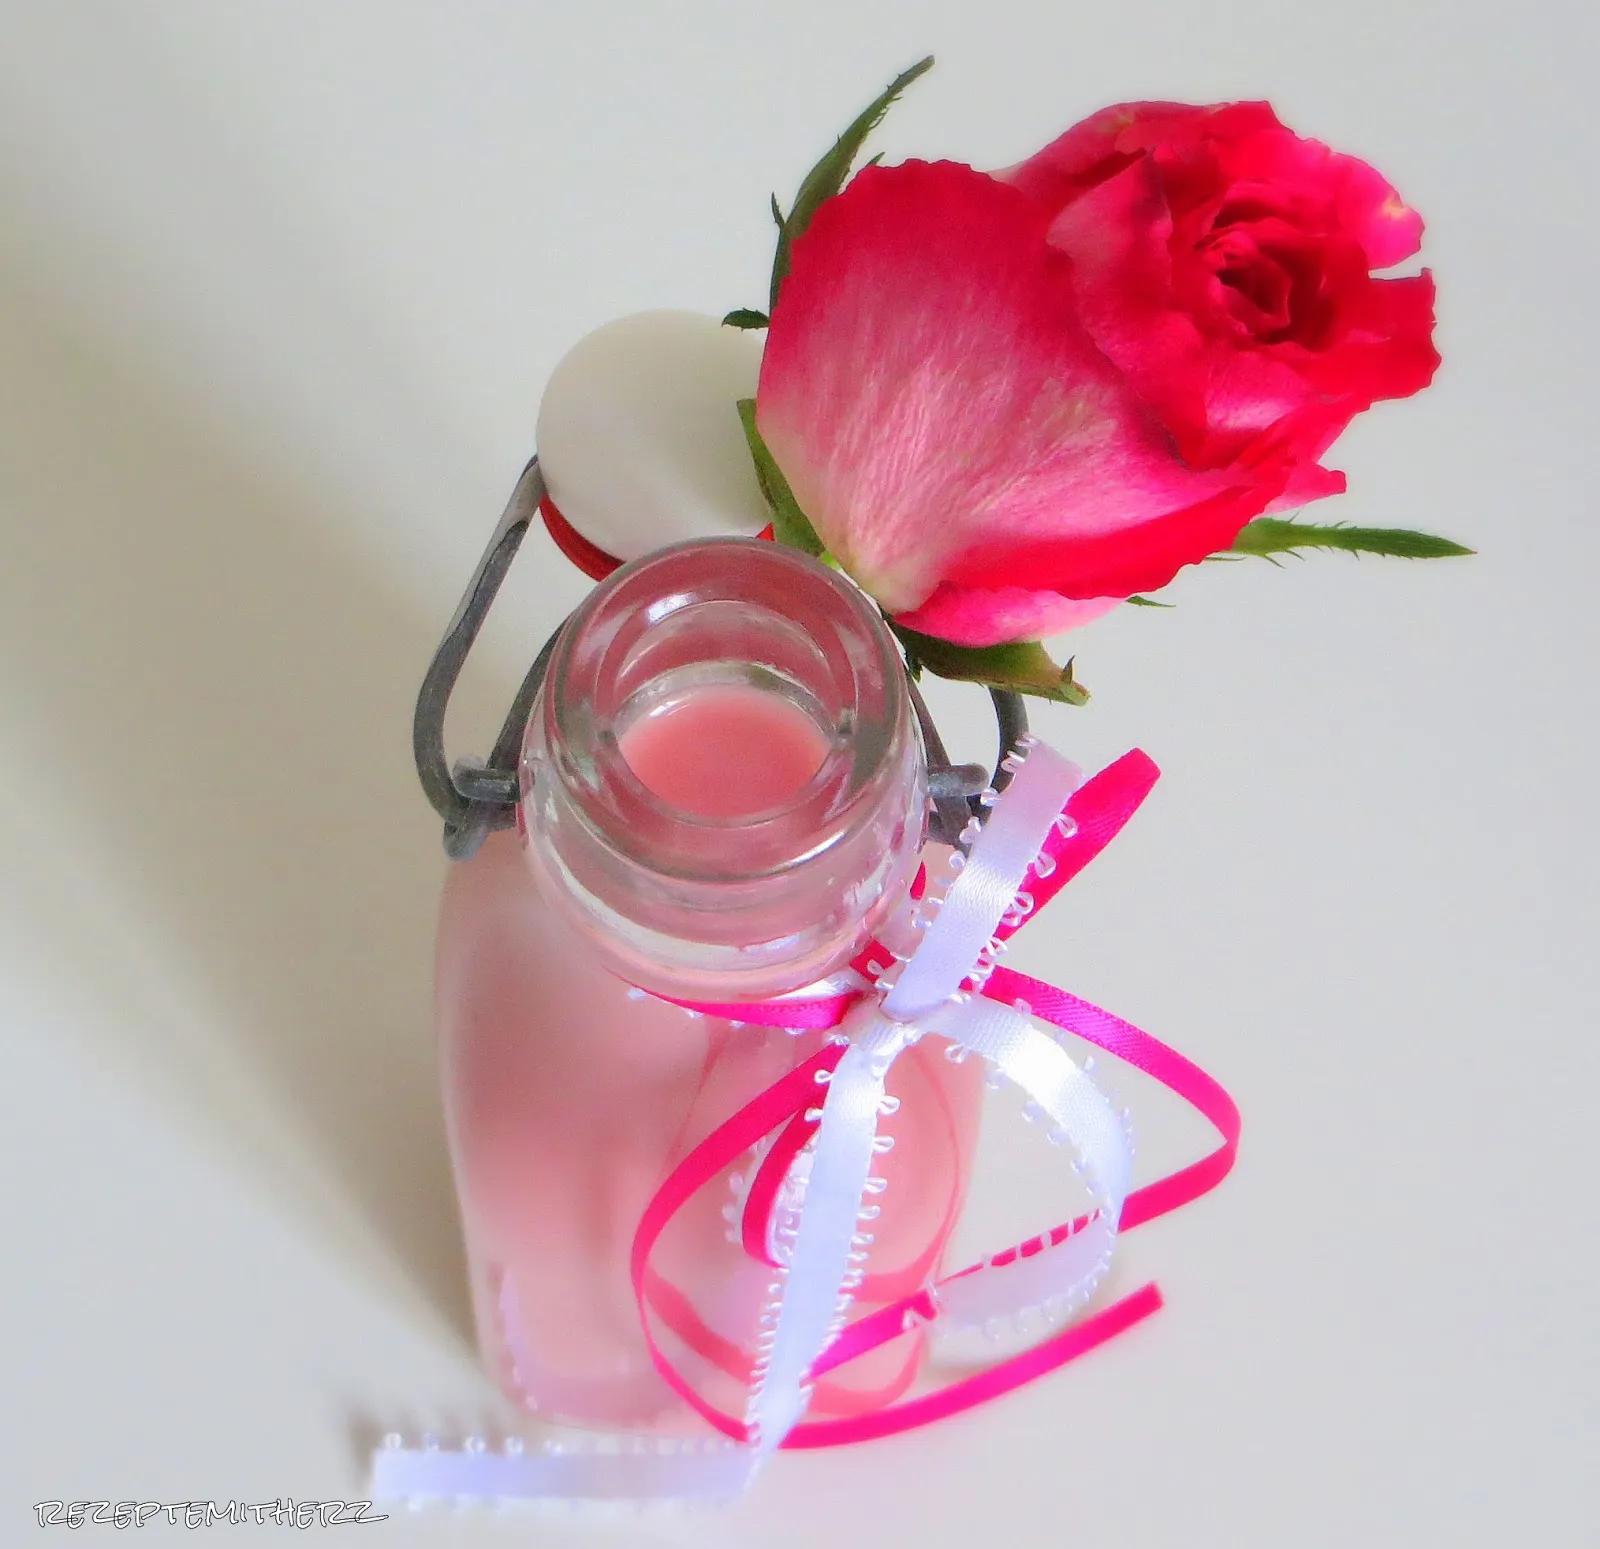 Rezepte mit Herz: Erdbeer - Sahne - Likör mit Vanille